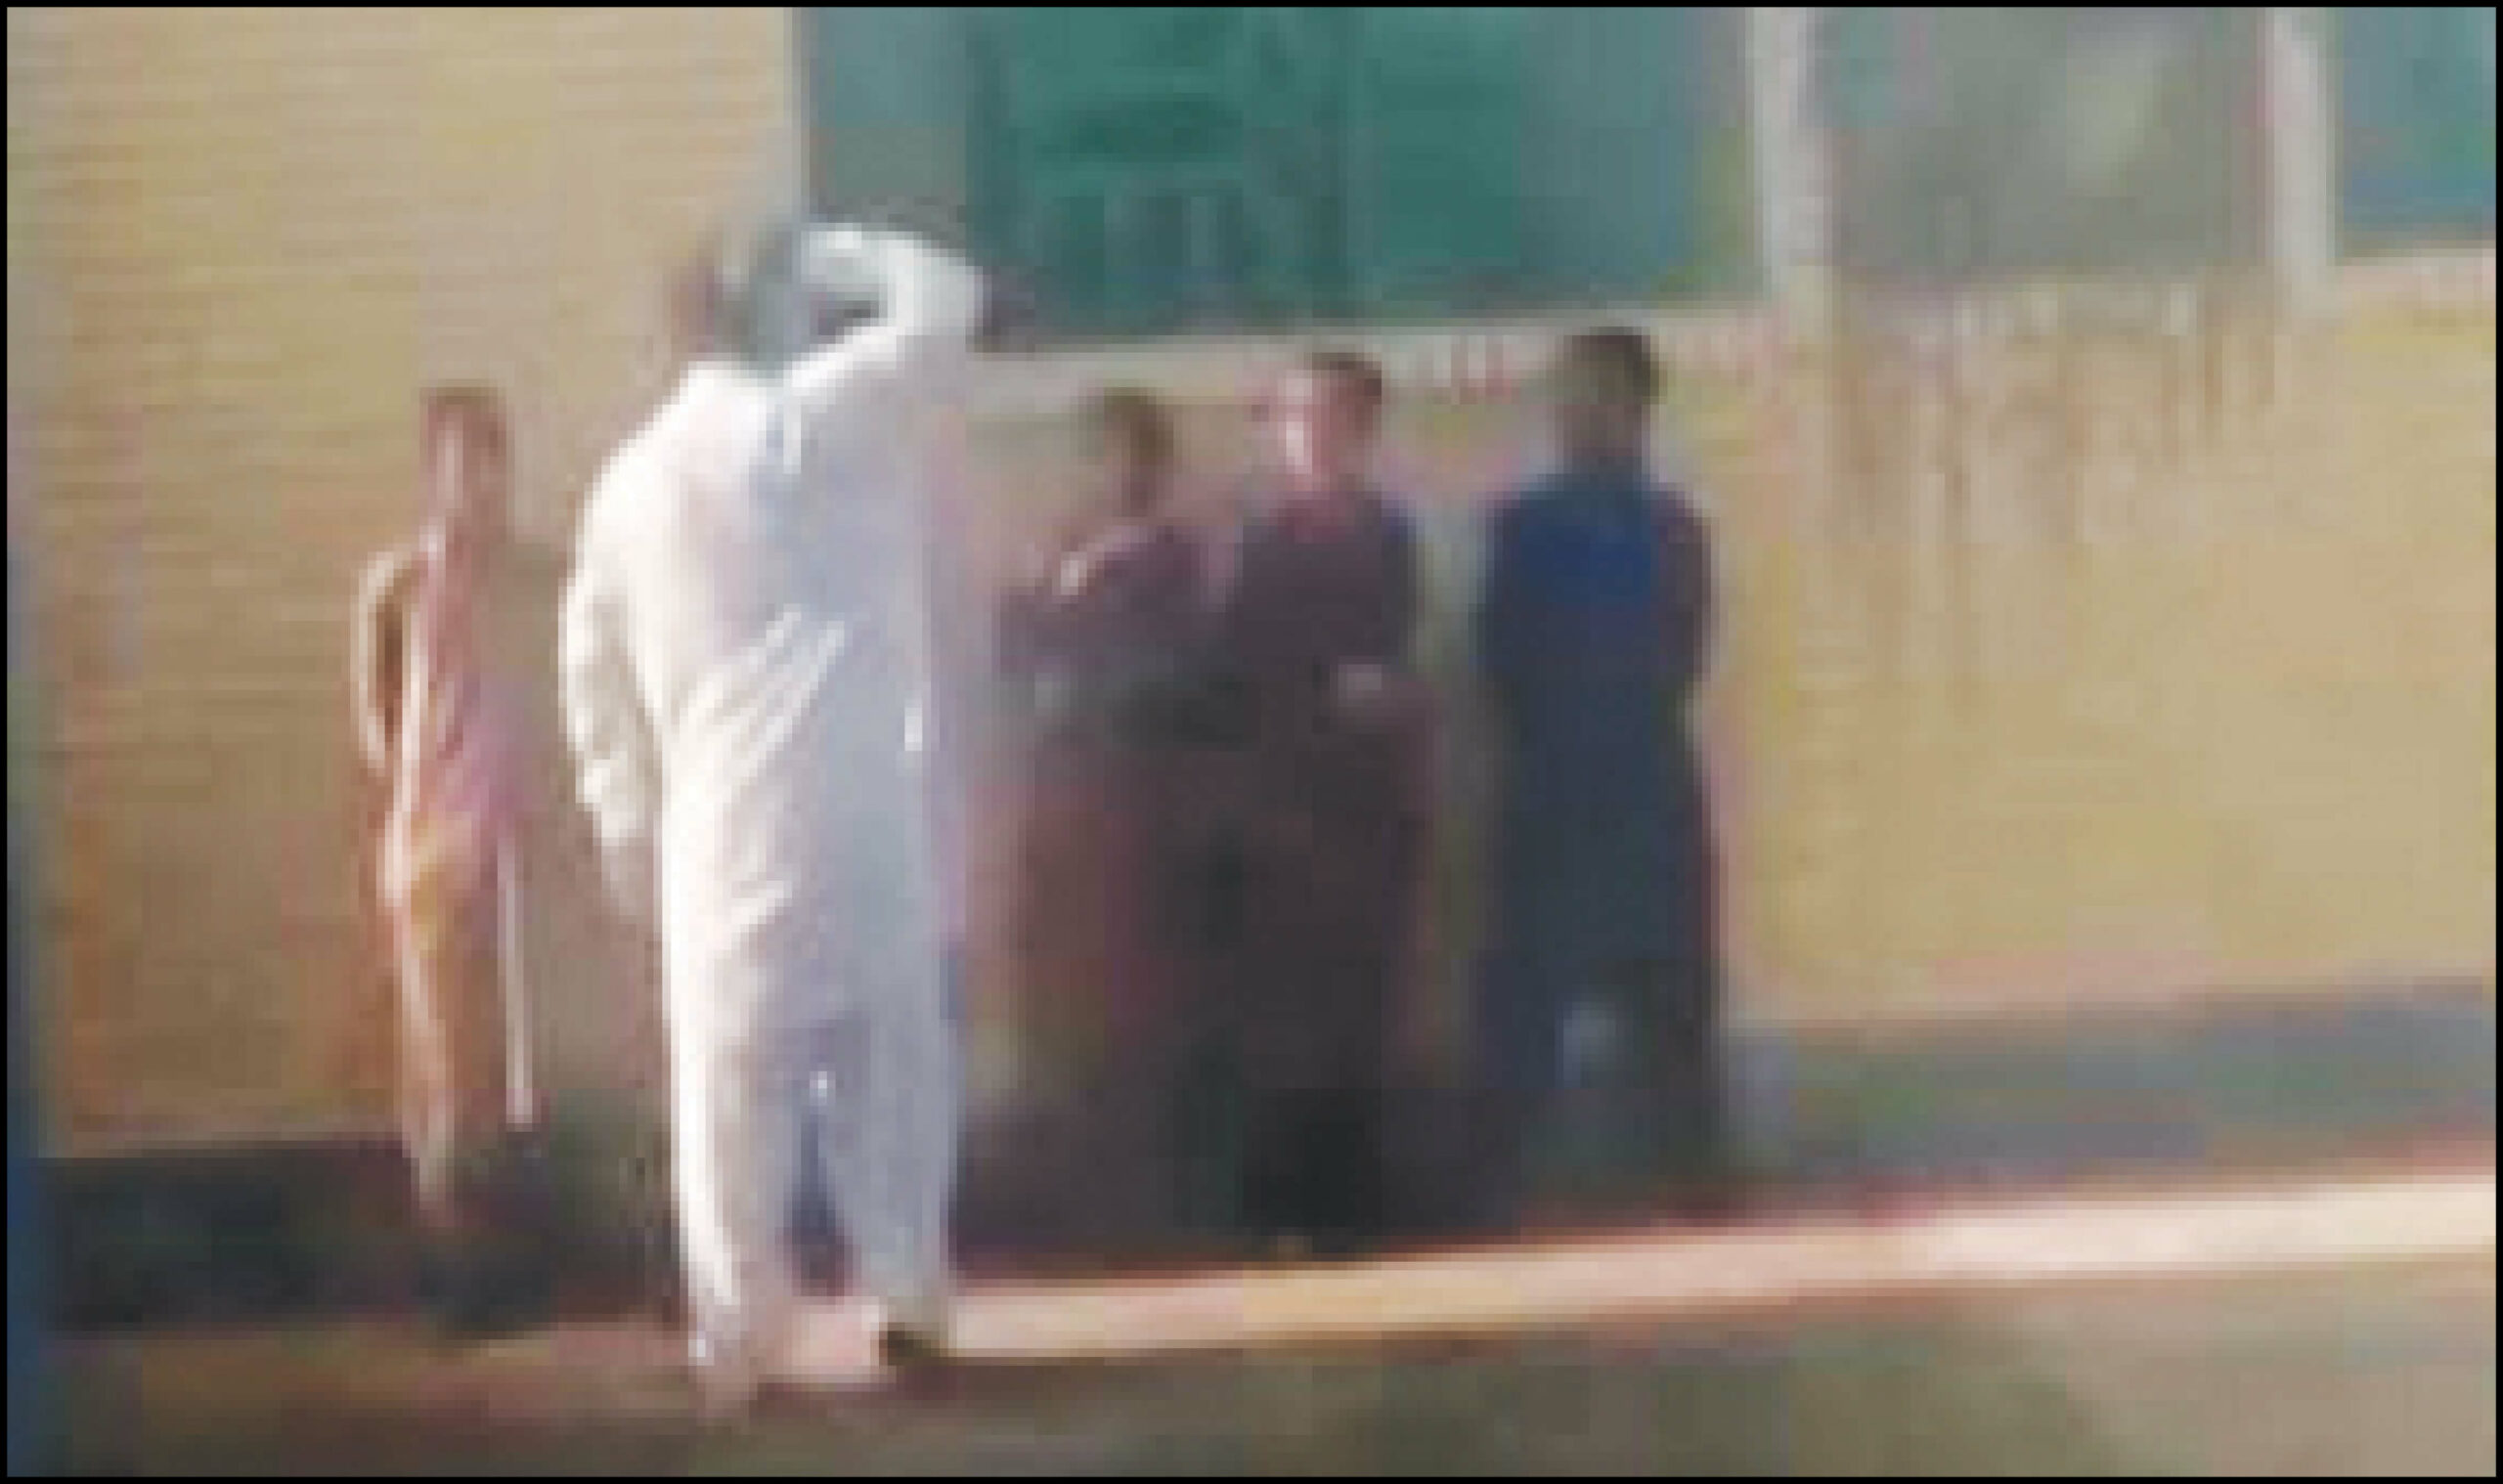 انتشار ویدئویی در فضای مجازی که نشان دهنده تنبیه بدنی دانش آموزی در شهرستان کنارک است!